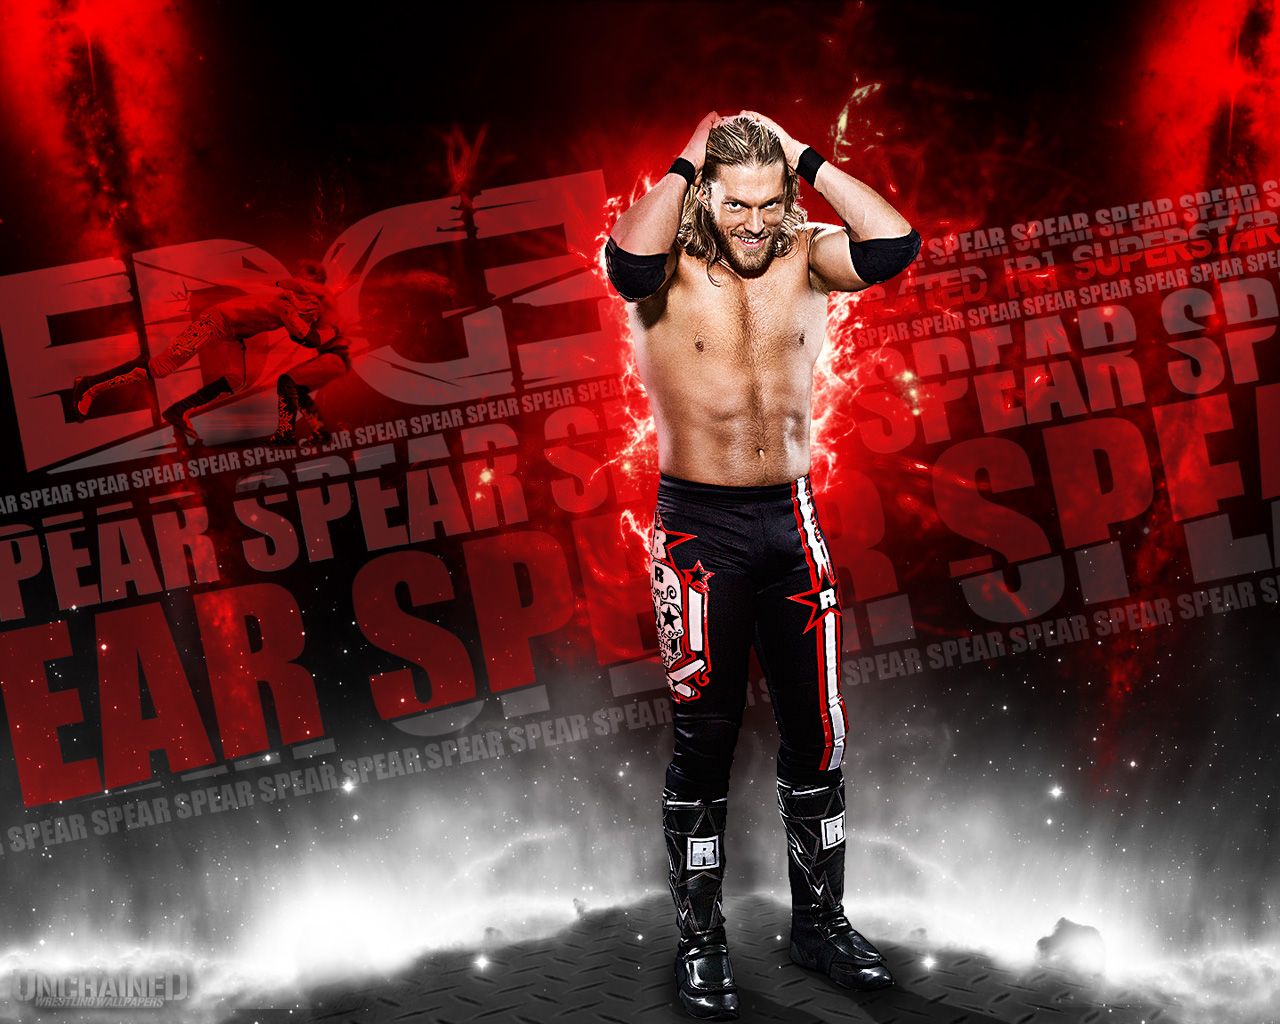 WWE Wrestling Background. WWE iPod Wallpaper, All WWE Wallpaper and Present WWE Logo Wallpaper